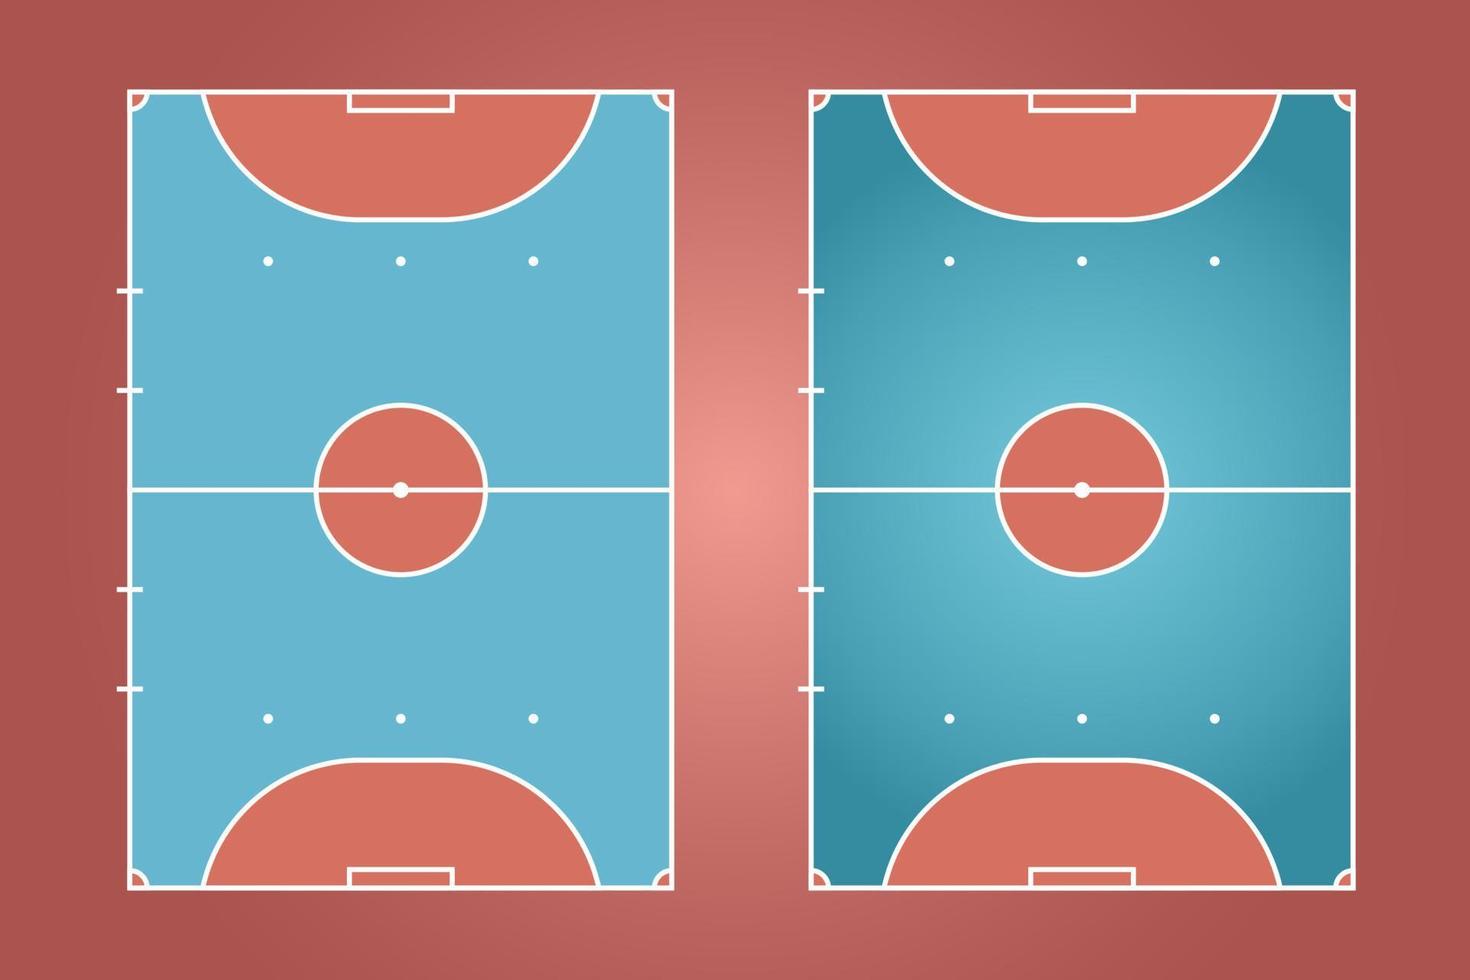 design plano de campo de futsal, ilustração gráfica de campo de futebol, vetor de quadra de futsal e layout.